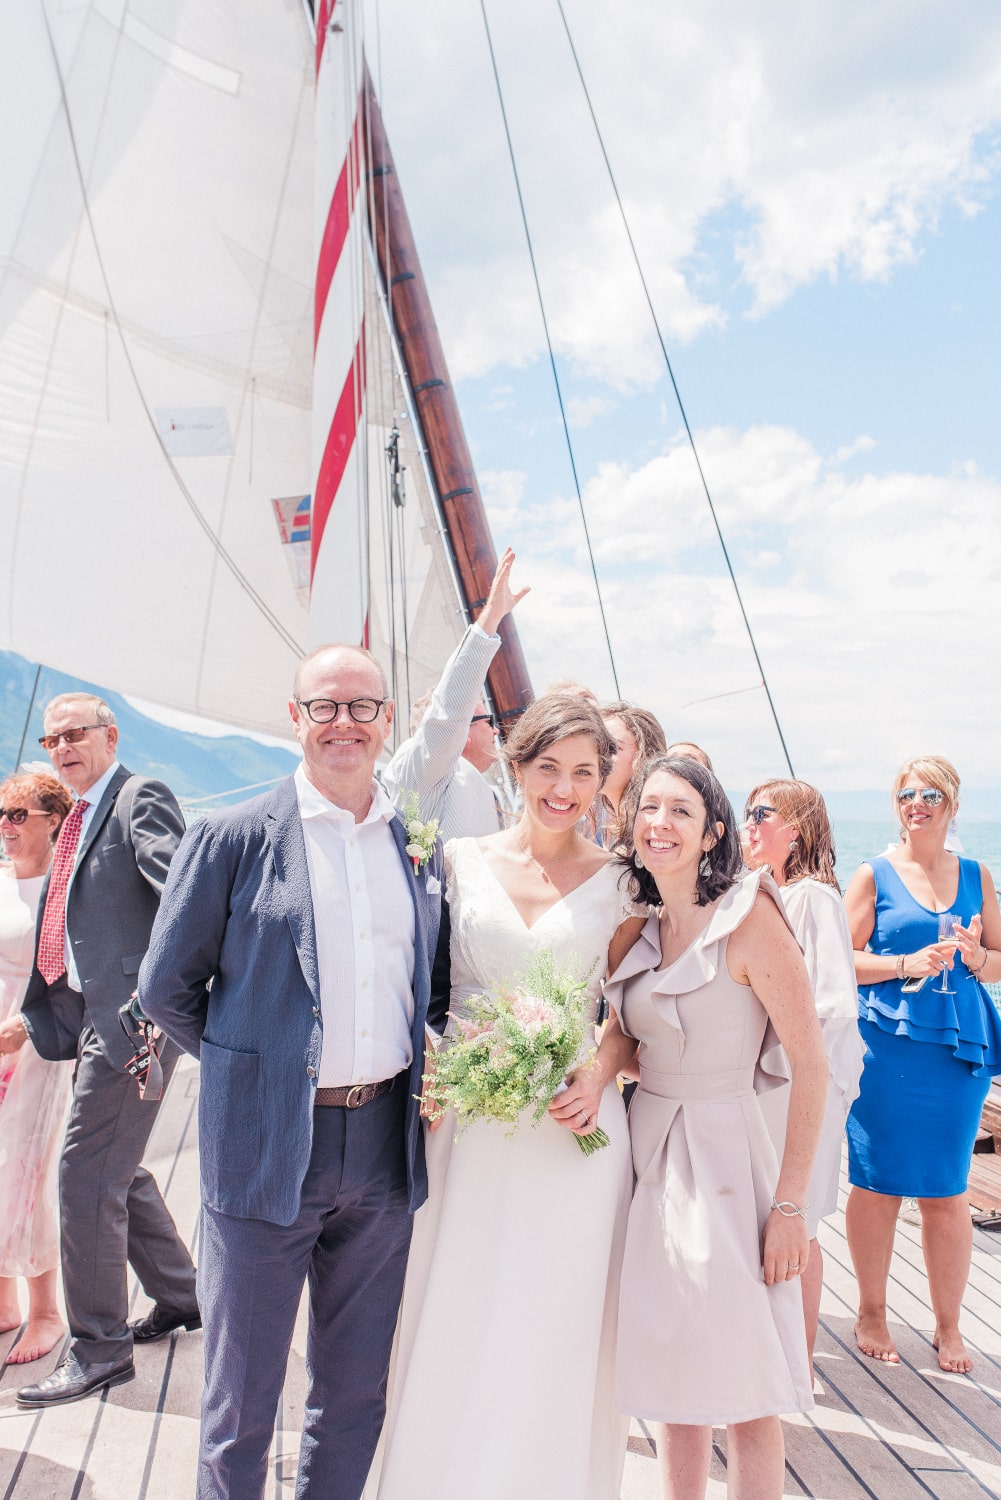 Cérémonie de mariage sur un bateau en Suisse